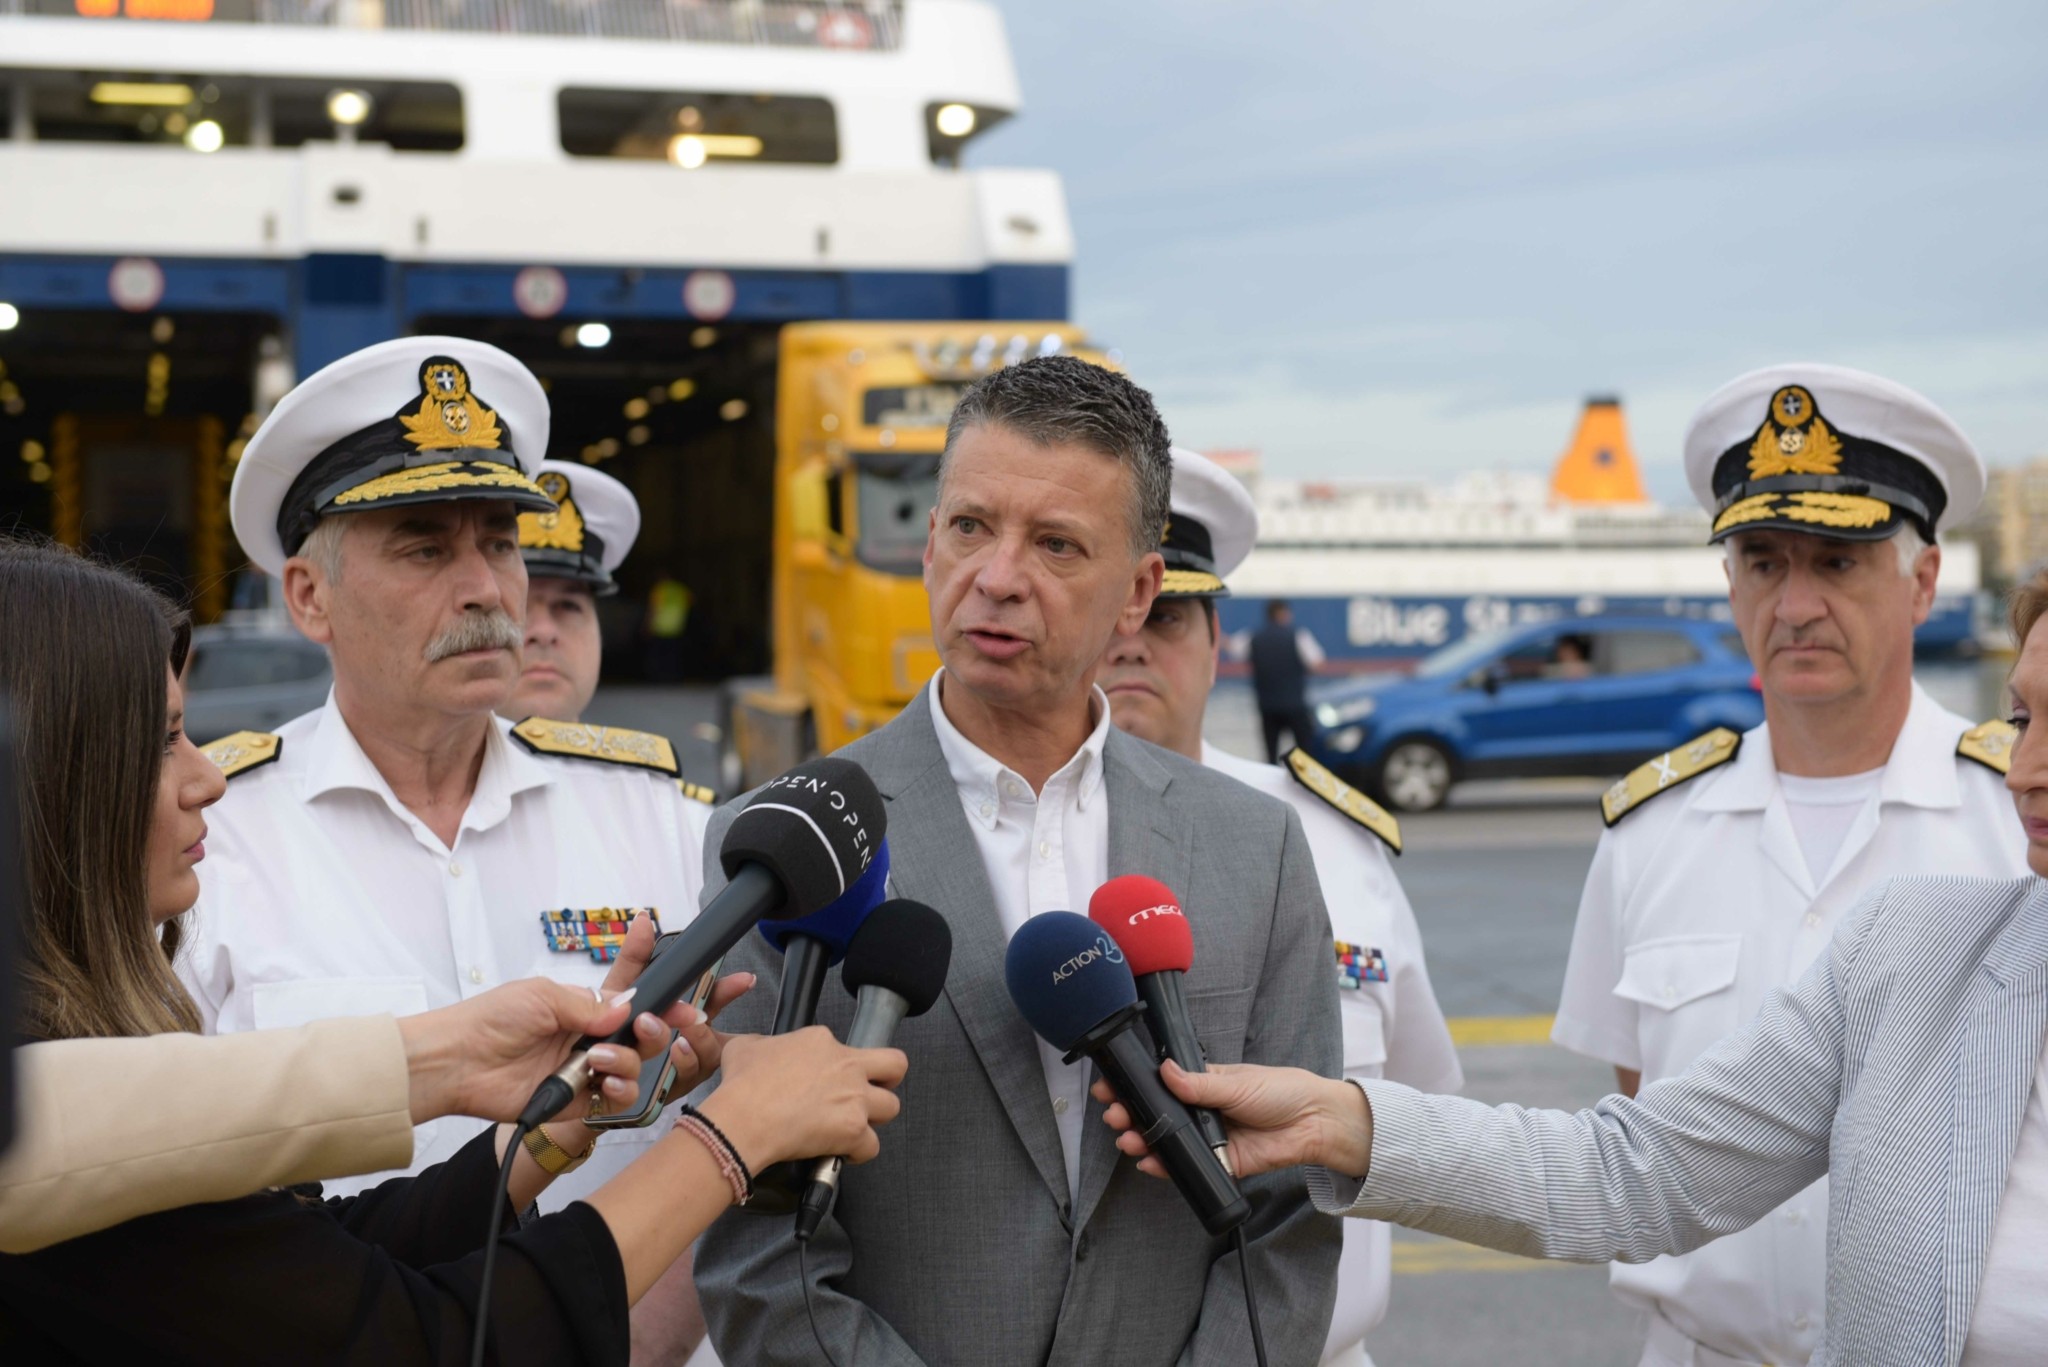 Κλιάρης από το λιμάνι του Πειραιά: «Γίνονται τακτικοί και έκτακτοι έλεγχοι για να διαπιστωθεί το αξιόπλοο των πλοίων»